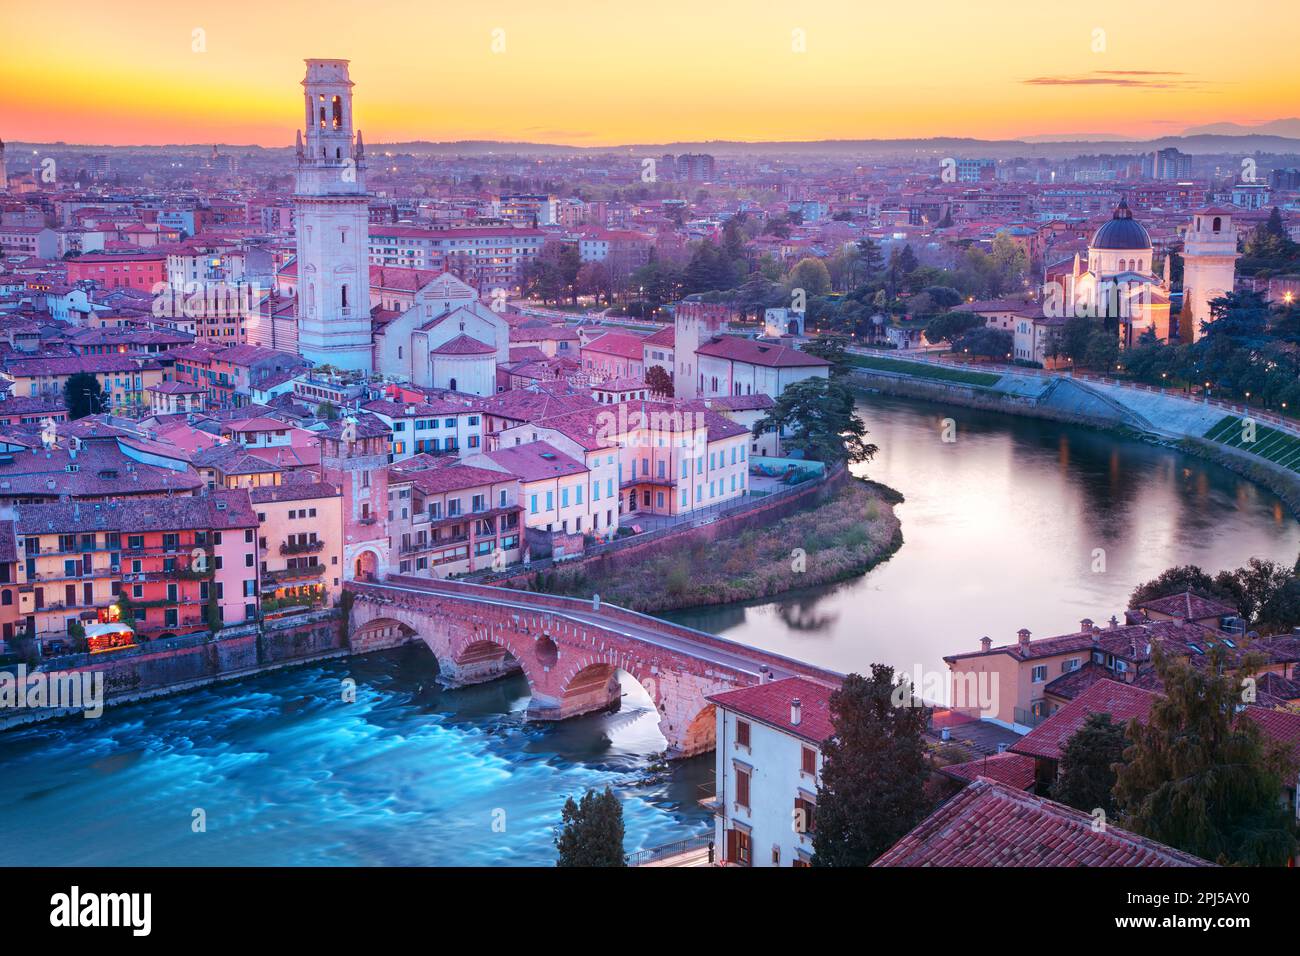 Verona, Italia. Immagine aerea del paesaggio urbano dell'iconica città italiana di Verona al tramonto. Foto Stock